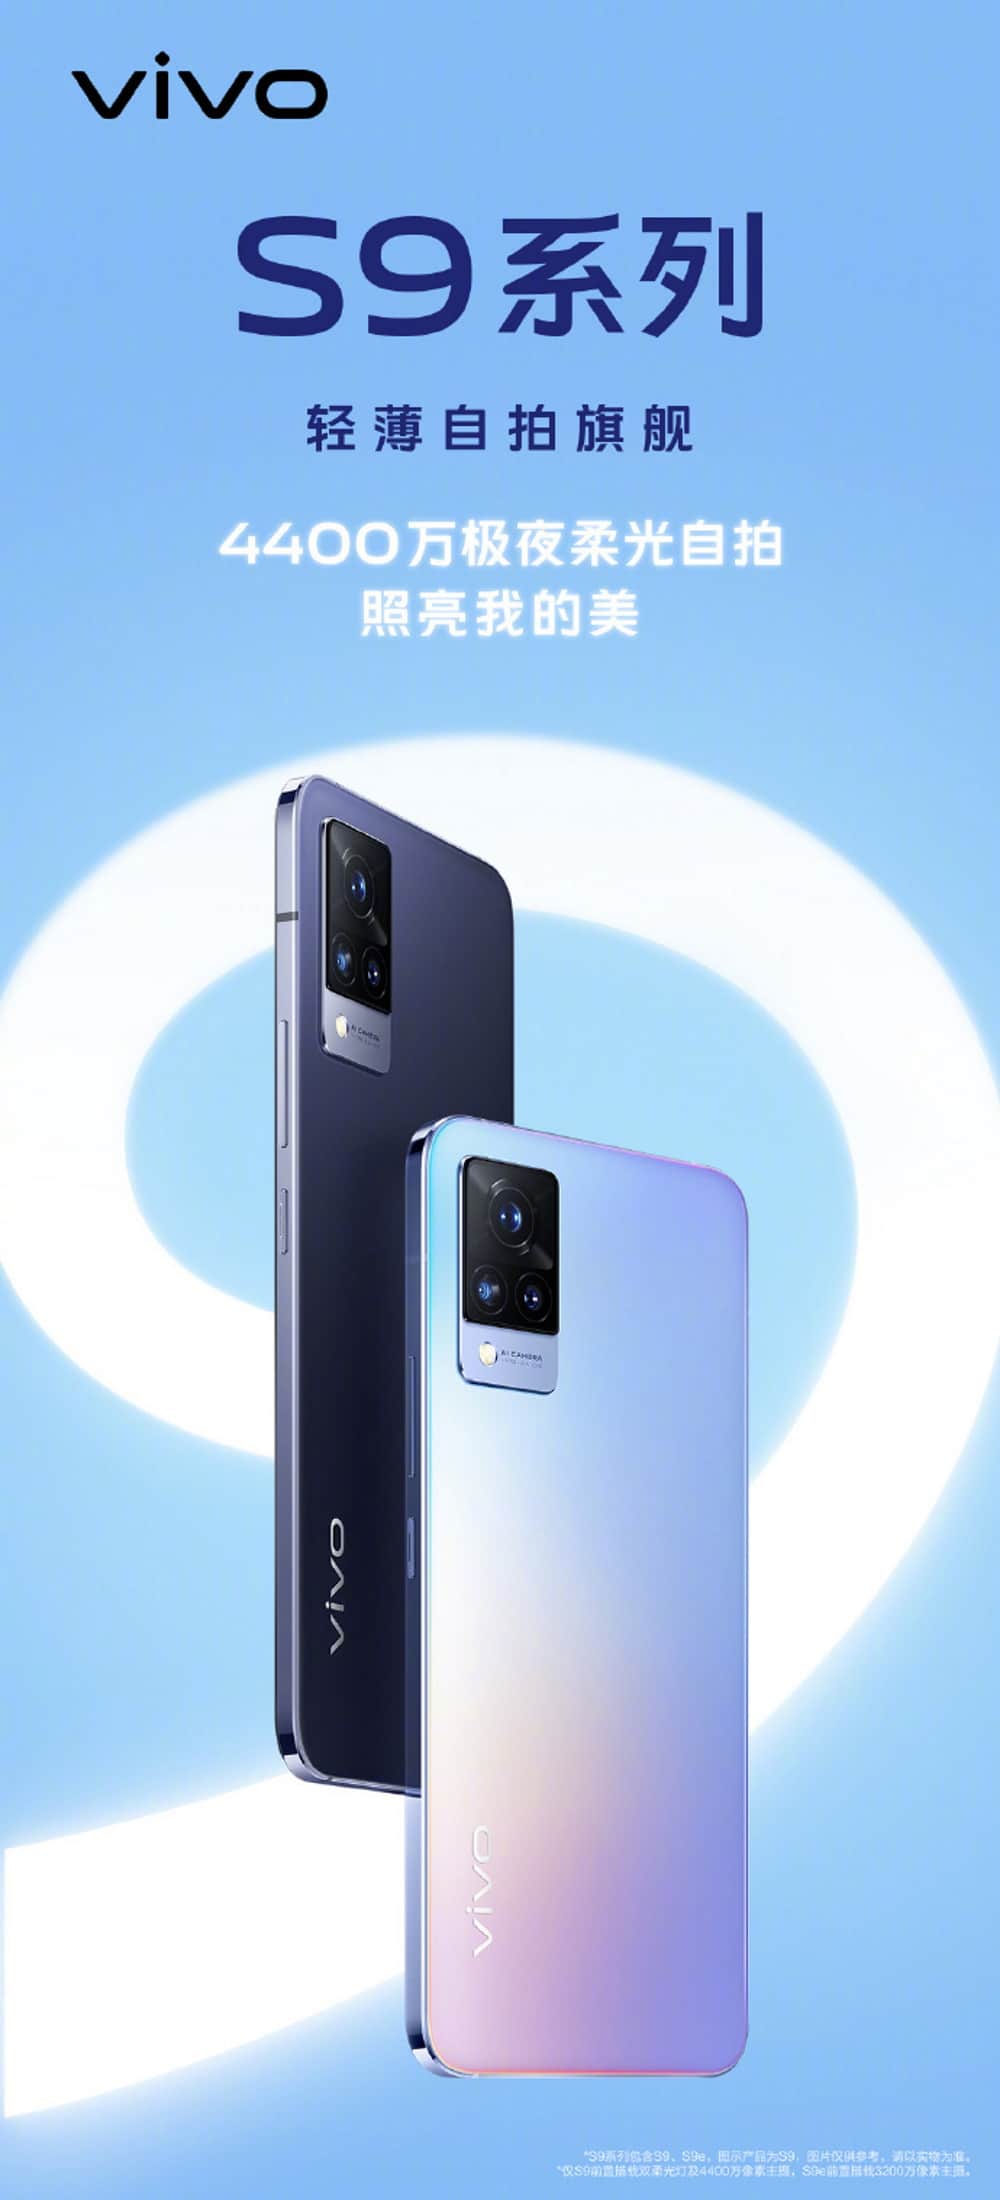 Pôster oficial do Vivo S9 vazou no Weibo e revelou algumas configurações do flagship